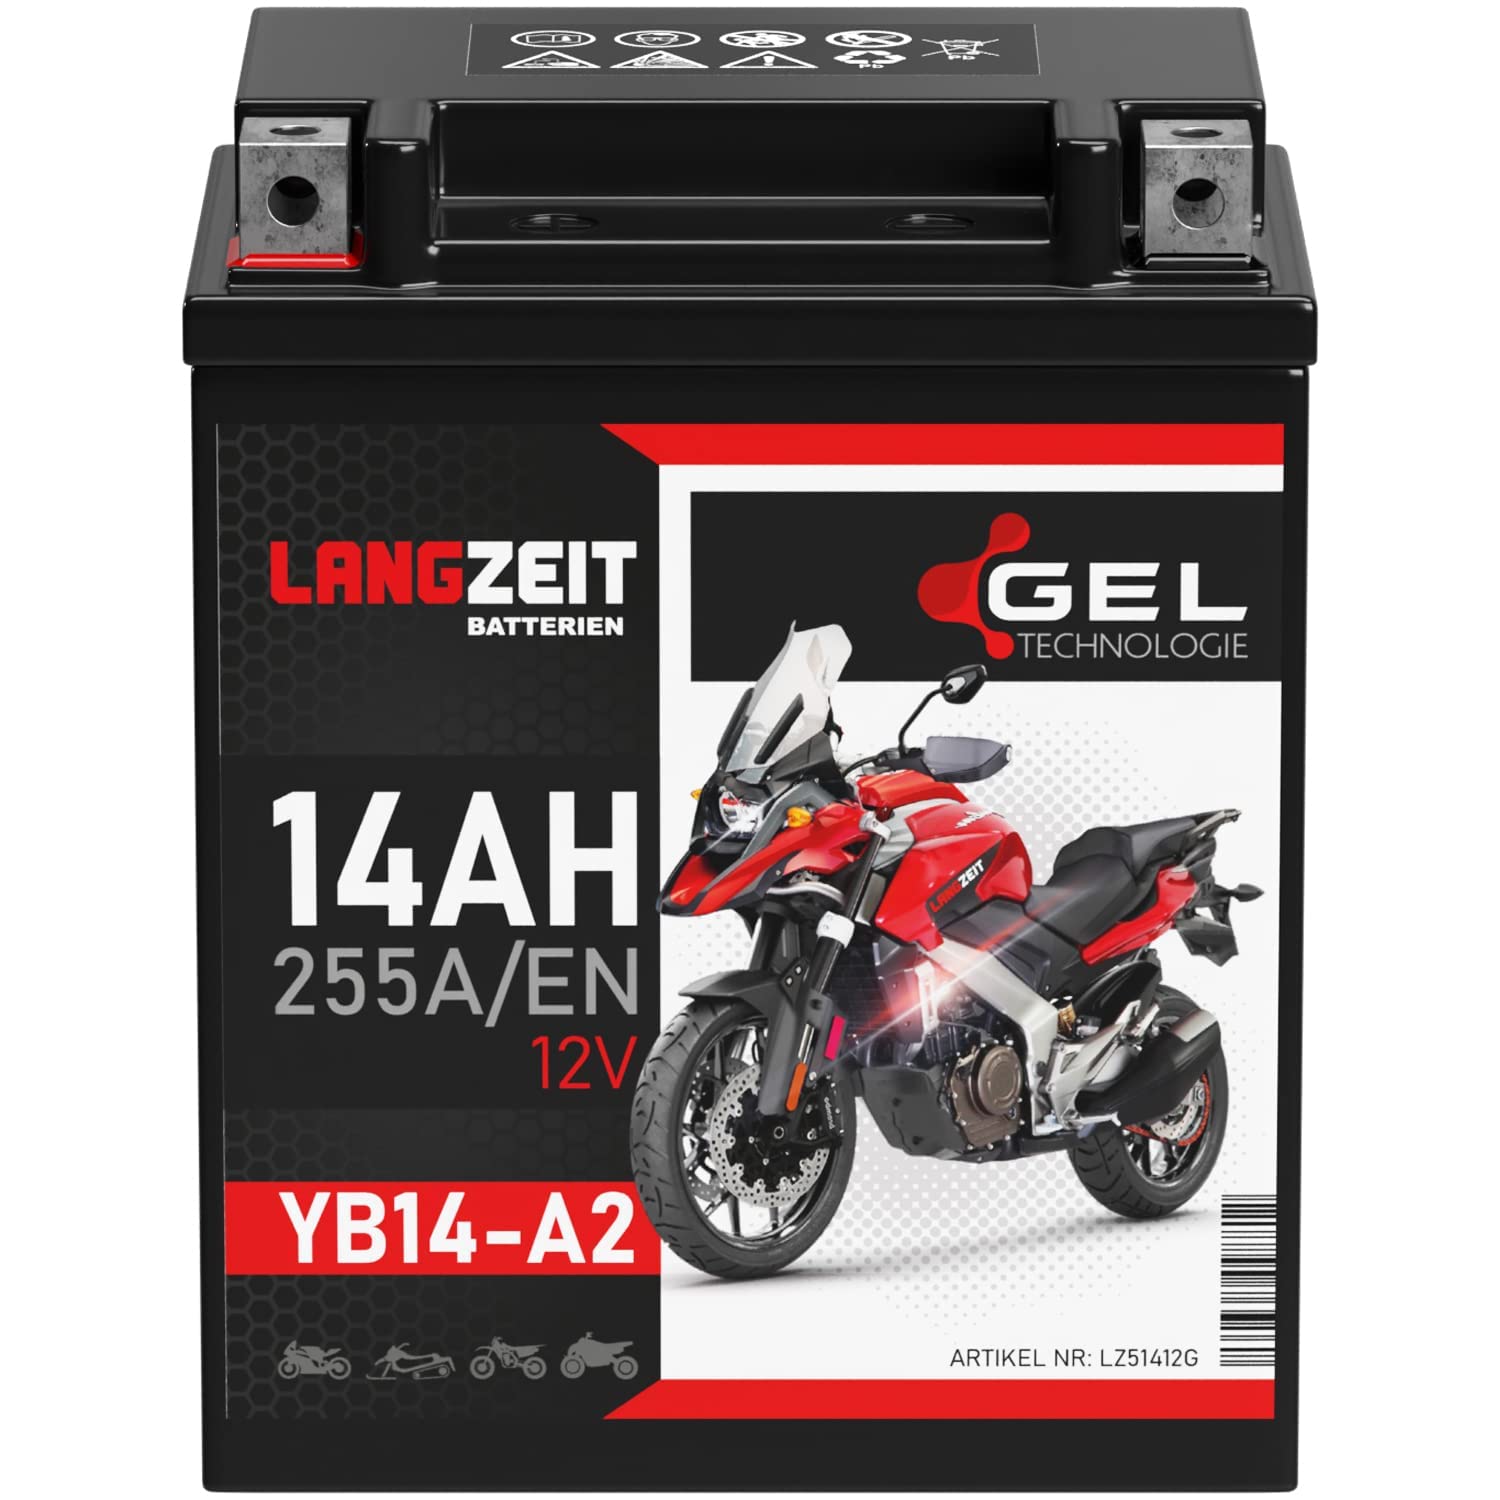 LANGZEIT YB14-A2 Motorradbatterie 12V 14Ah 255A/EN GEL Batterie 12V 51412 CB14-A2 FB14-A2 6Y4P doppelte Lebensdauer vorgeladen auslaufsicher wartungsfrei von LANGZEIT Batterien